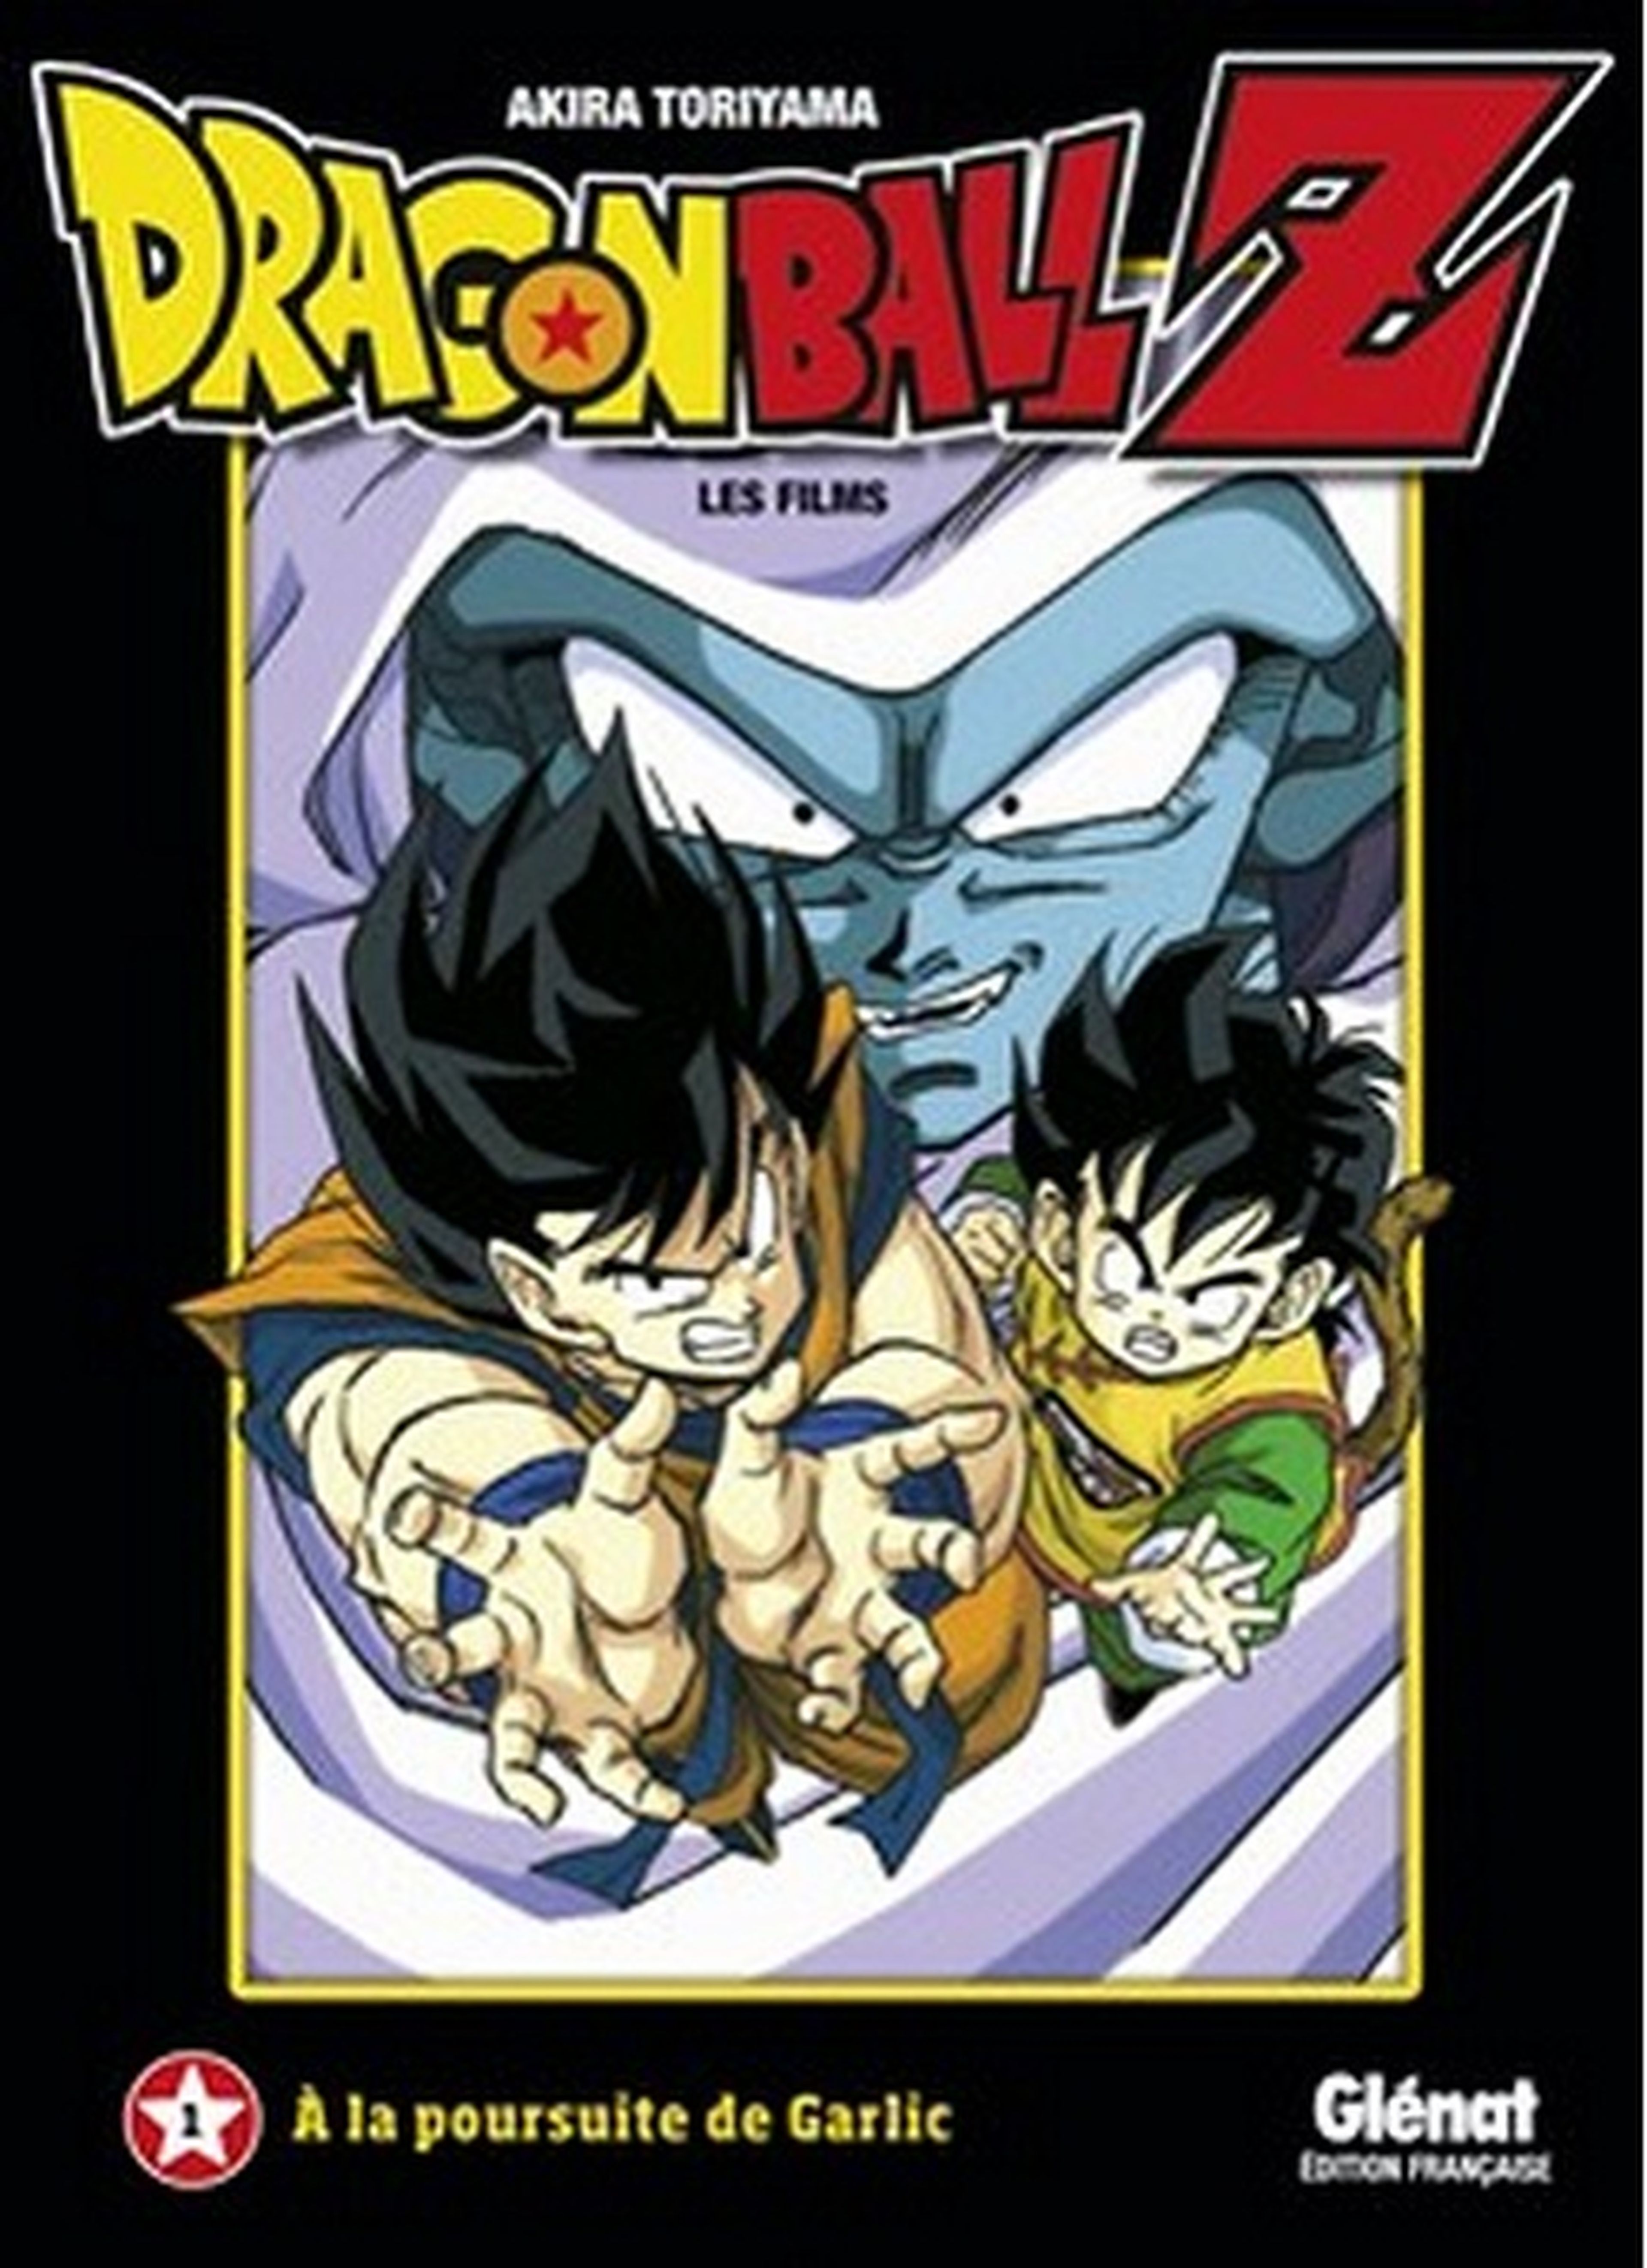 Anime cómics de Dragon Ball Z